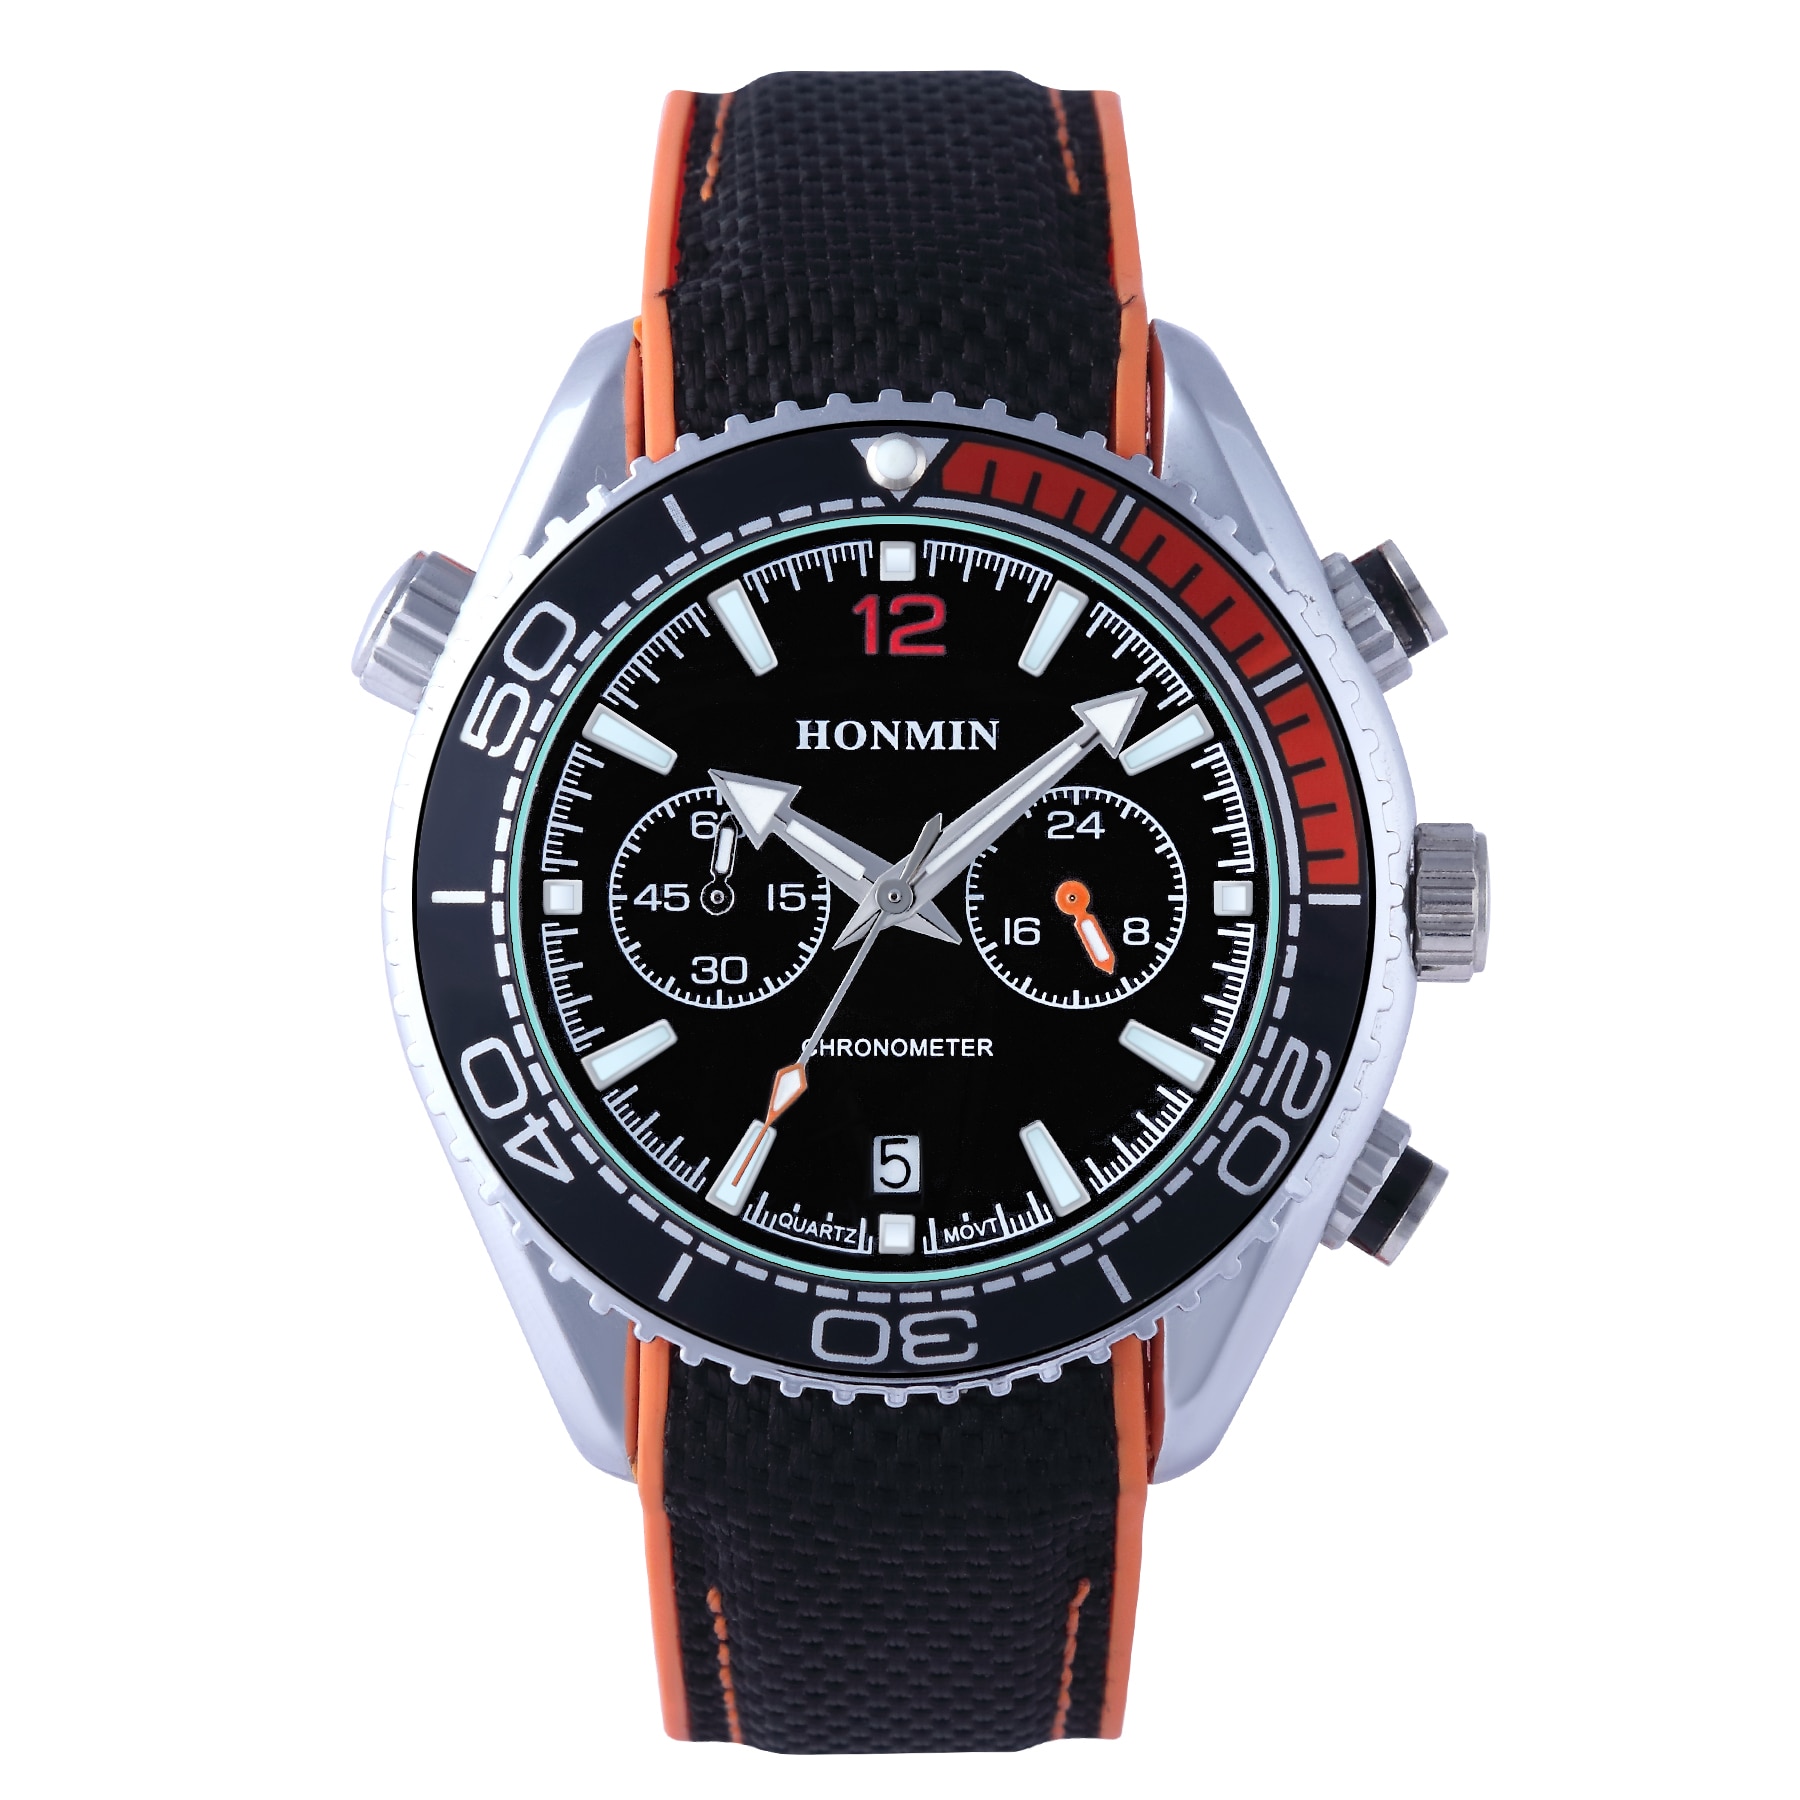 Klassieke Mode Mannen Business Nylon Band Horloge Horloges Voor Mannen Mannen Horloge Heren Horloges Top Brand Luxe Horloge